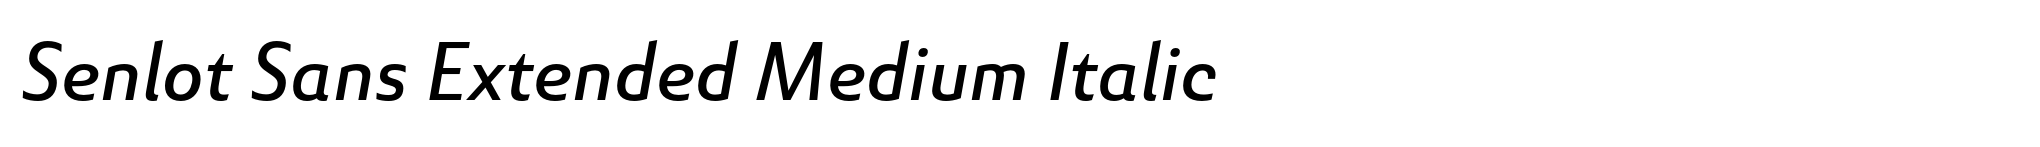 Senlot Sans Extended Medium Italic image